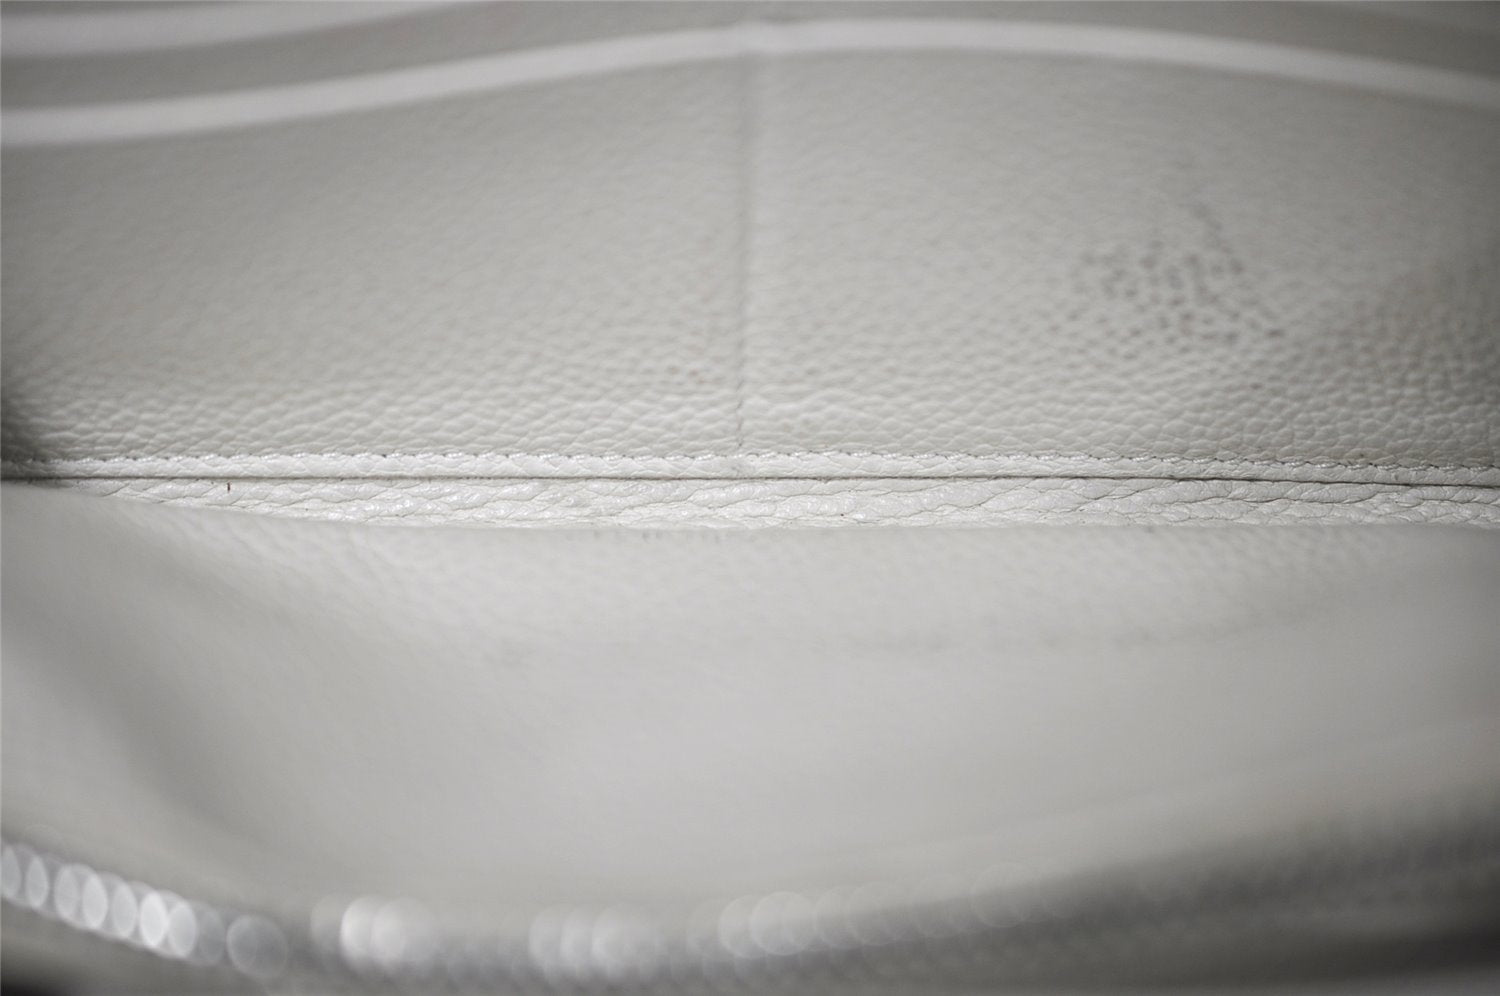 Authentic SAINT LAURENT Vintage Long Wallet Purse Leather White 8699J